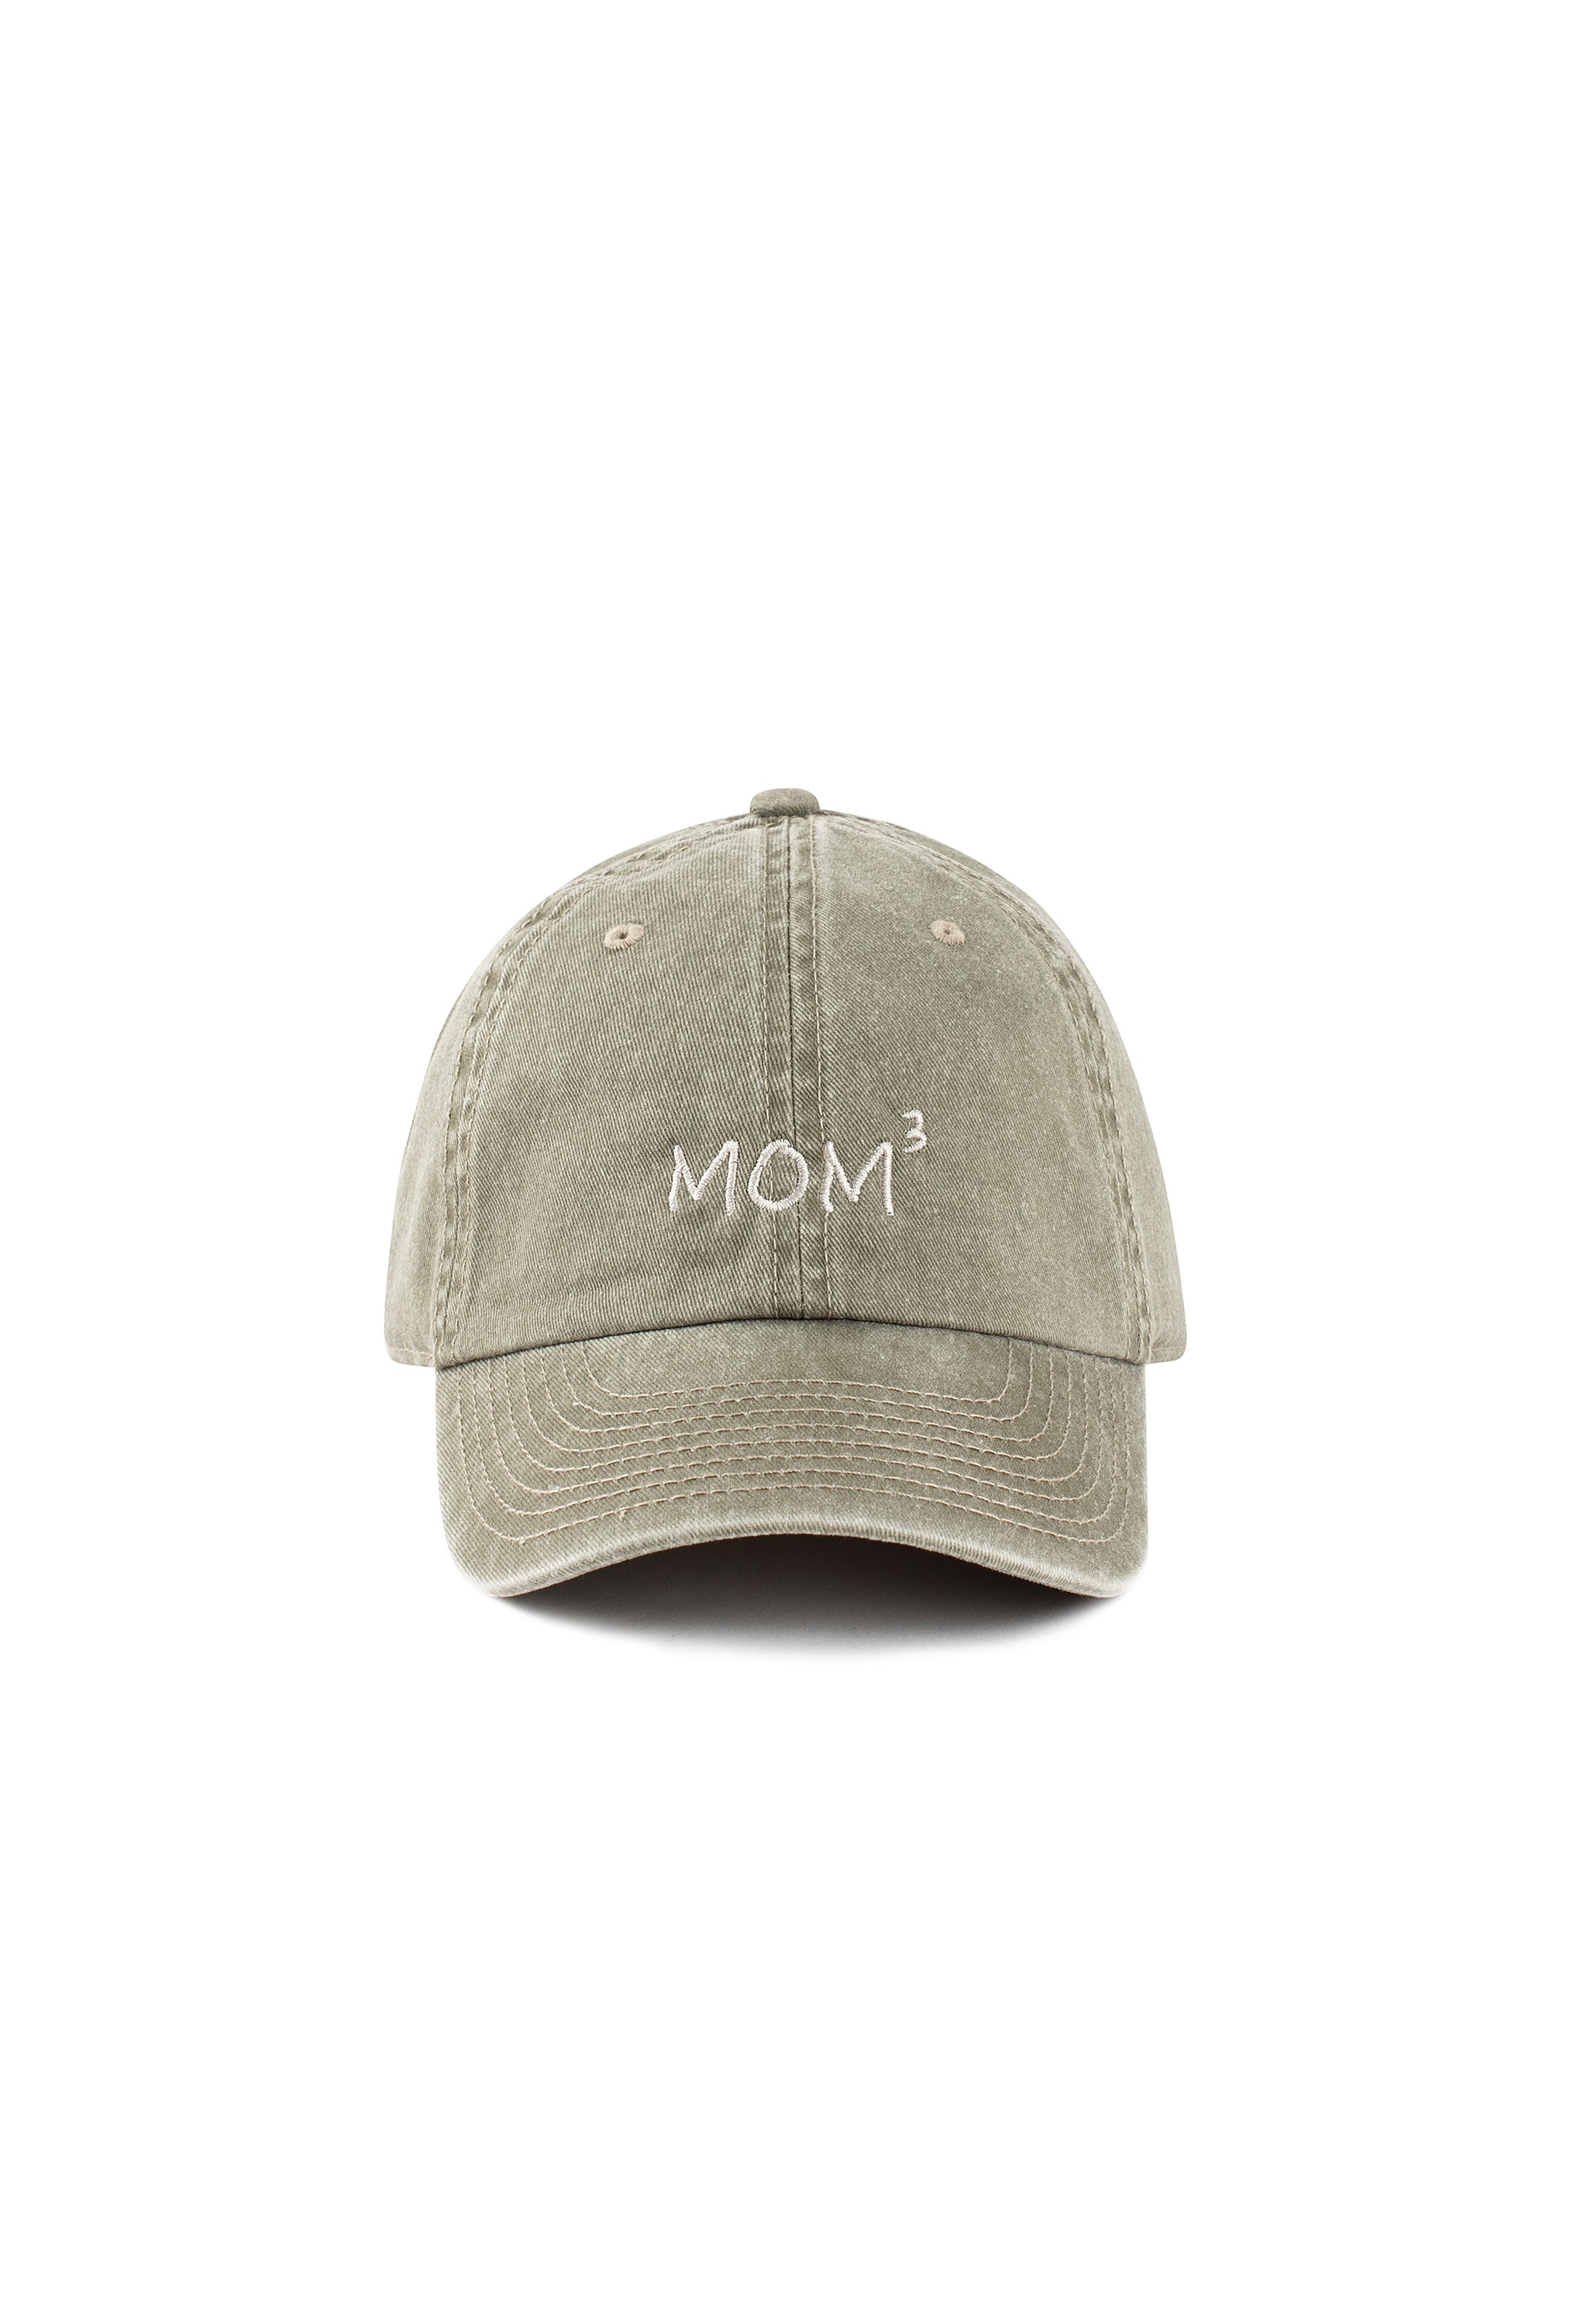 Moms' Cap